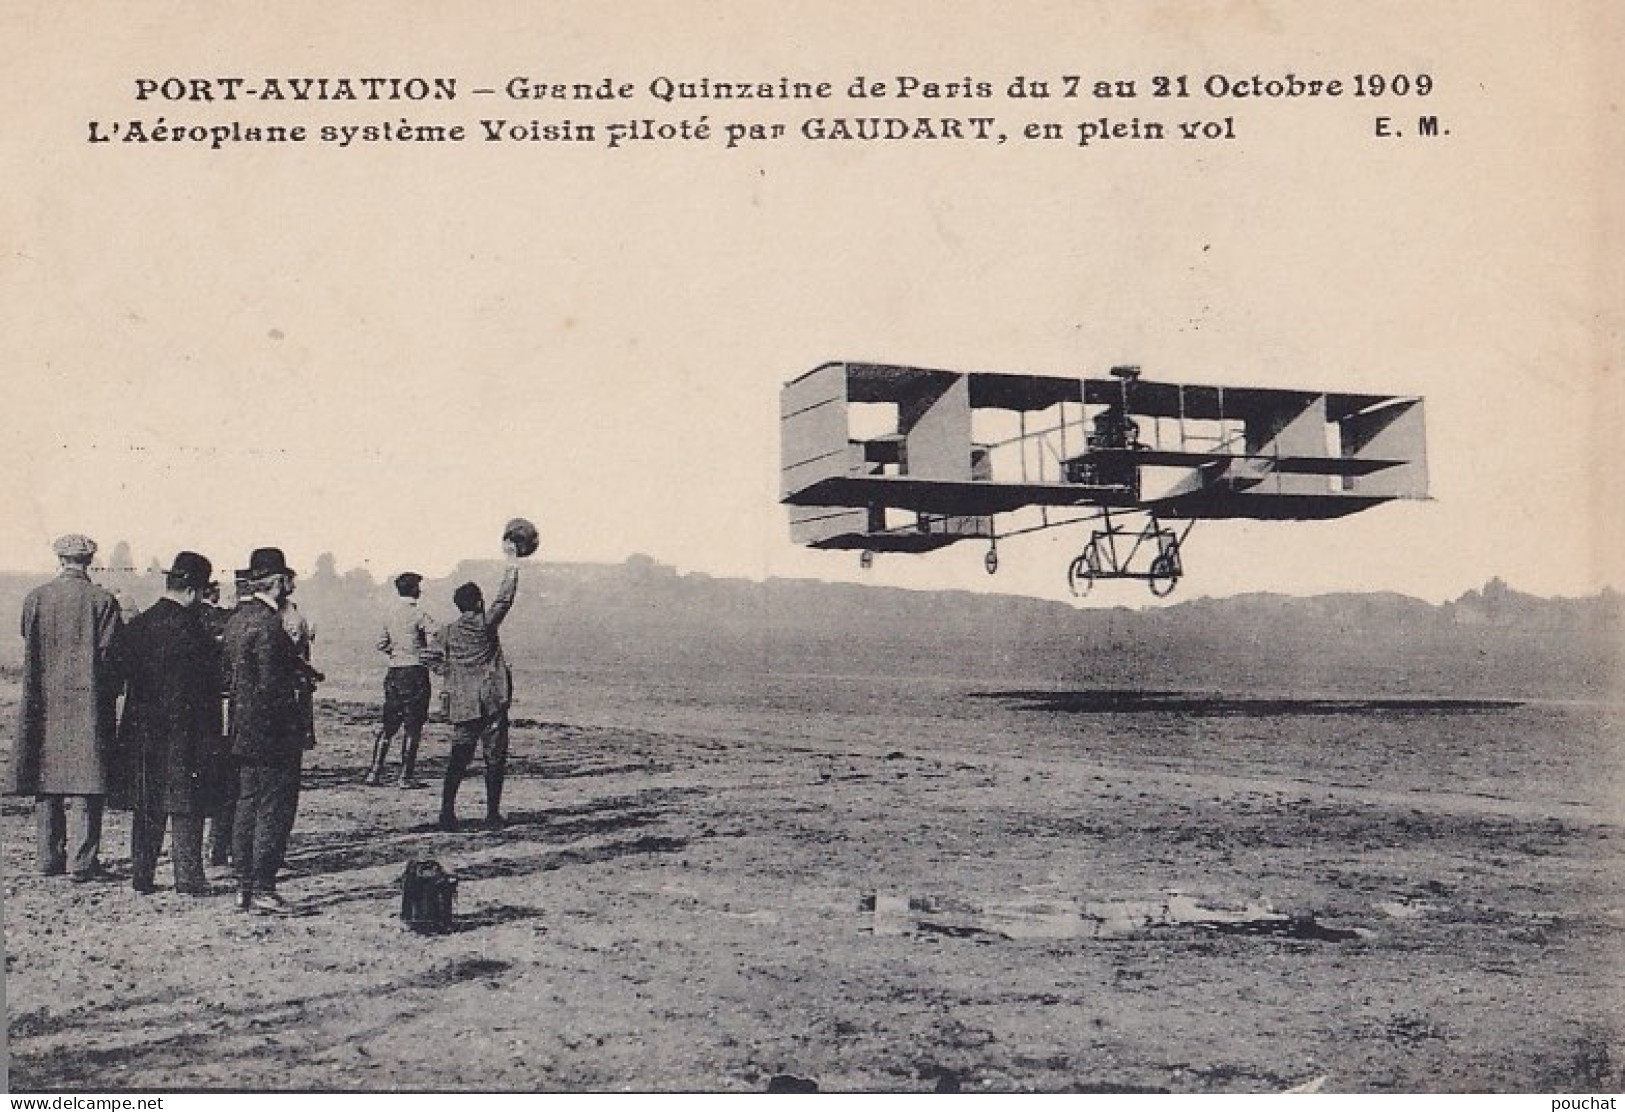 PORT AVIATION GRANDE QUINZAINE DE PARIS DU 7 AU 21 OCTOBRE 1909 - L'AEROPLANE SYSTEME VOISIN PILOTE PAR GAUDART EN VOL  - Meetings